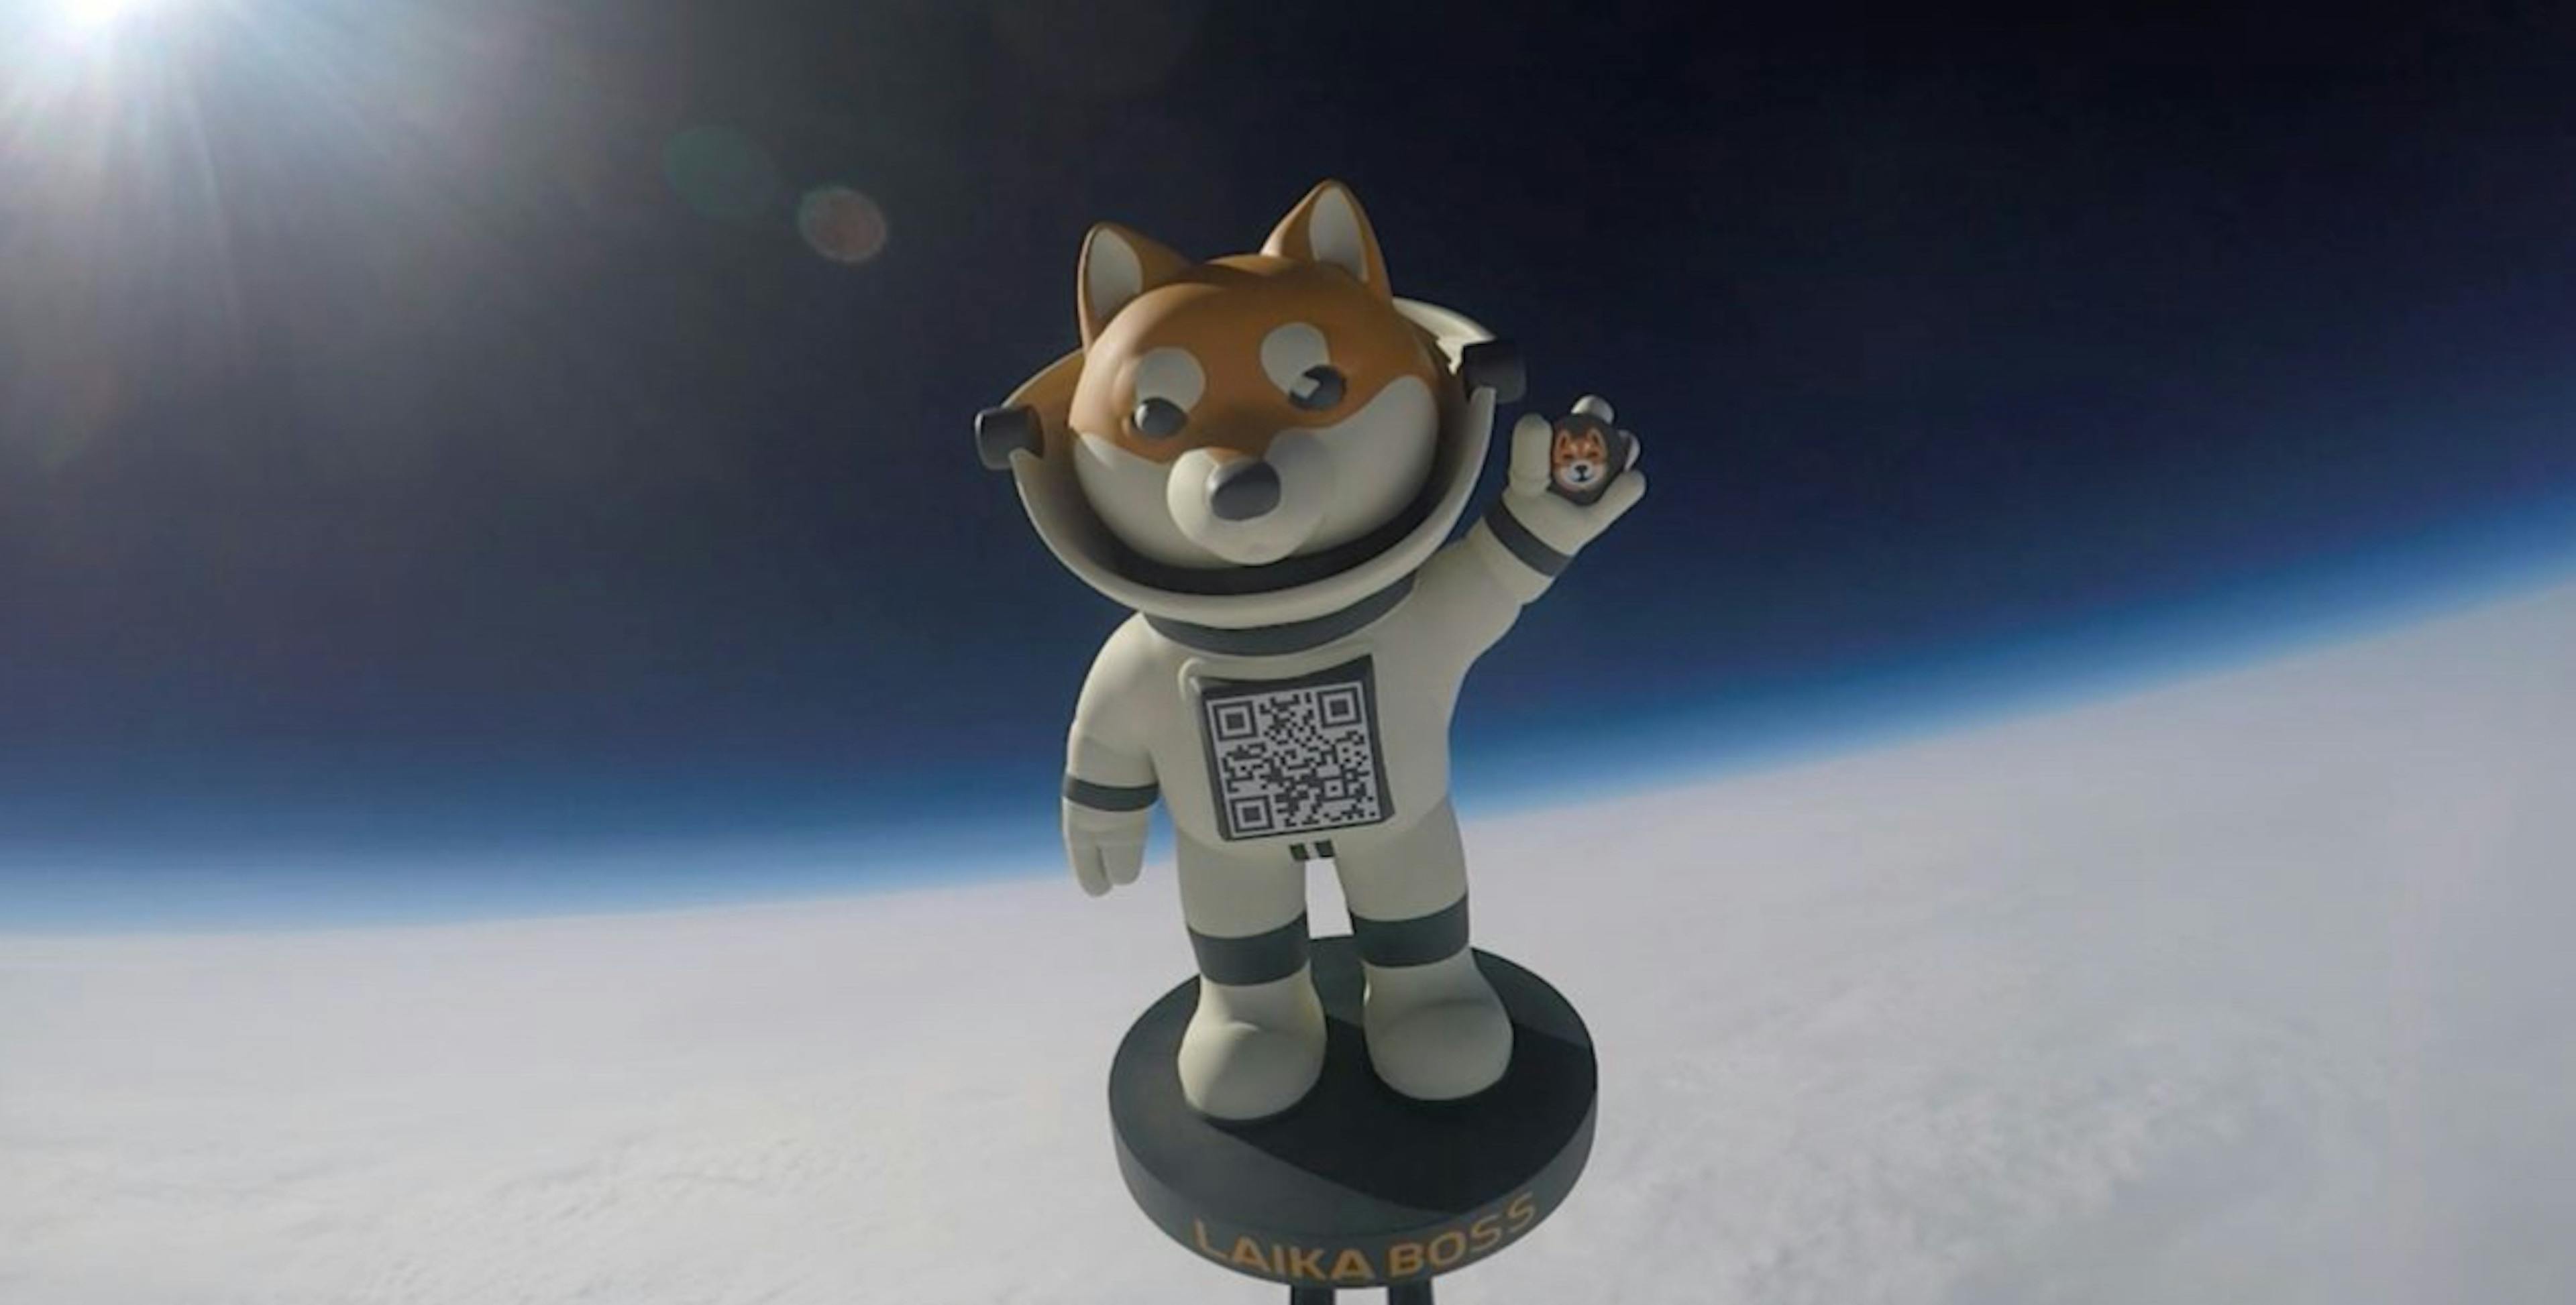 featured image - Laika lên mặt trăng: Một cách tiếp cận mới đối với giáo dục Memecoin và sự gắn kết với cộng đồng